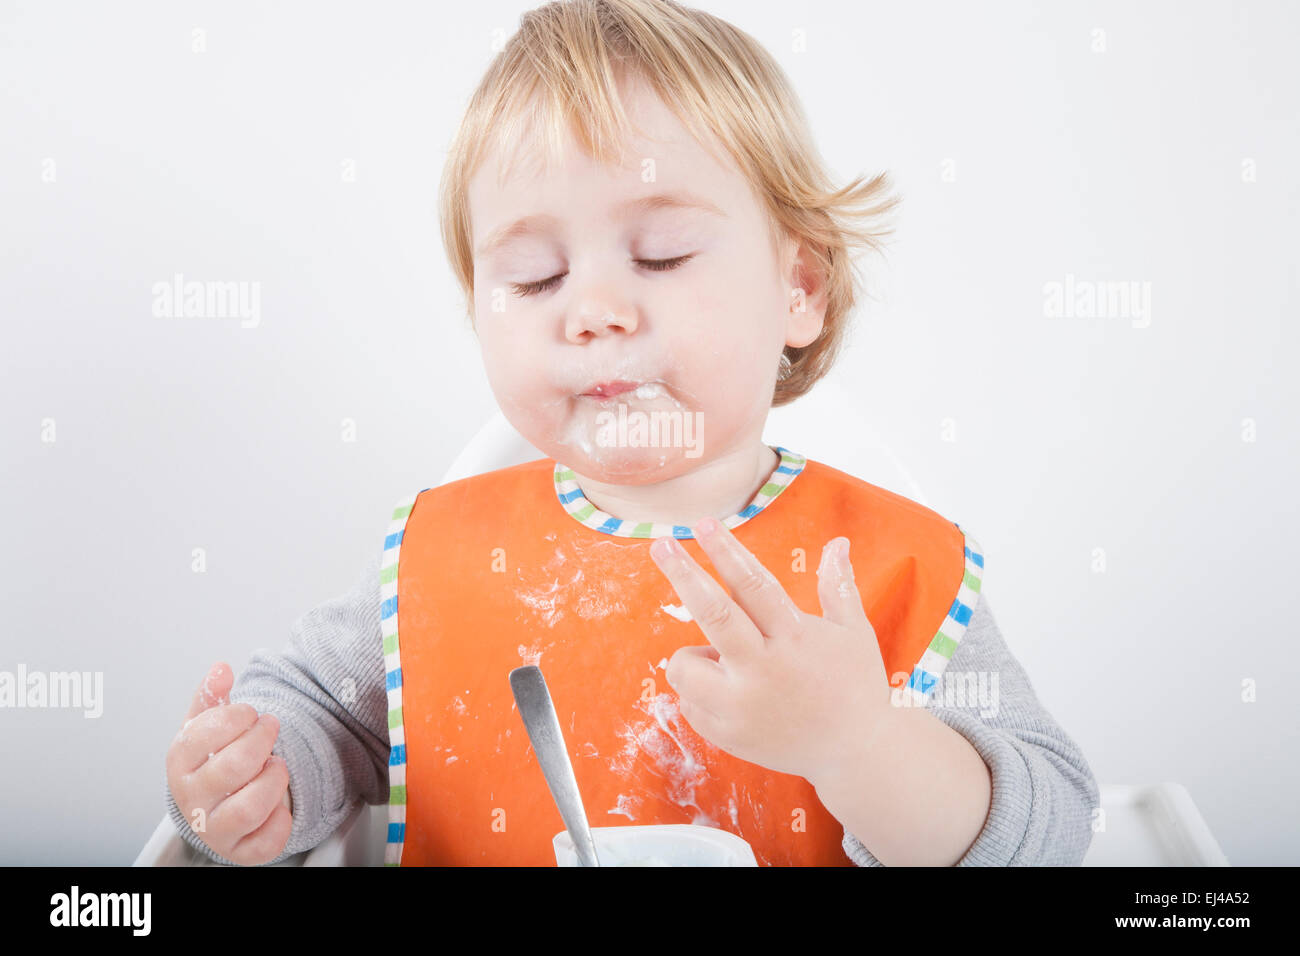 Rubio caucásico diecisiete meses de edad del bebé babero naranja suéter gris comiendo comida con su mano en la silla alta blanco Foto de stock